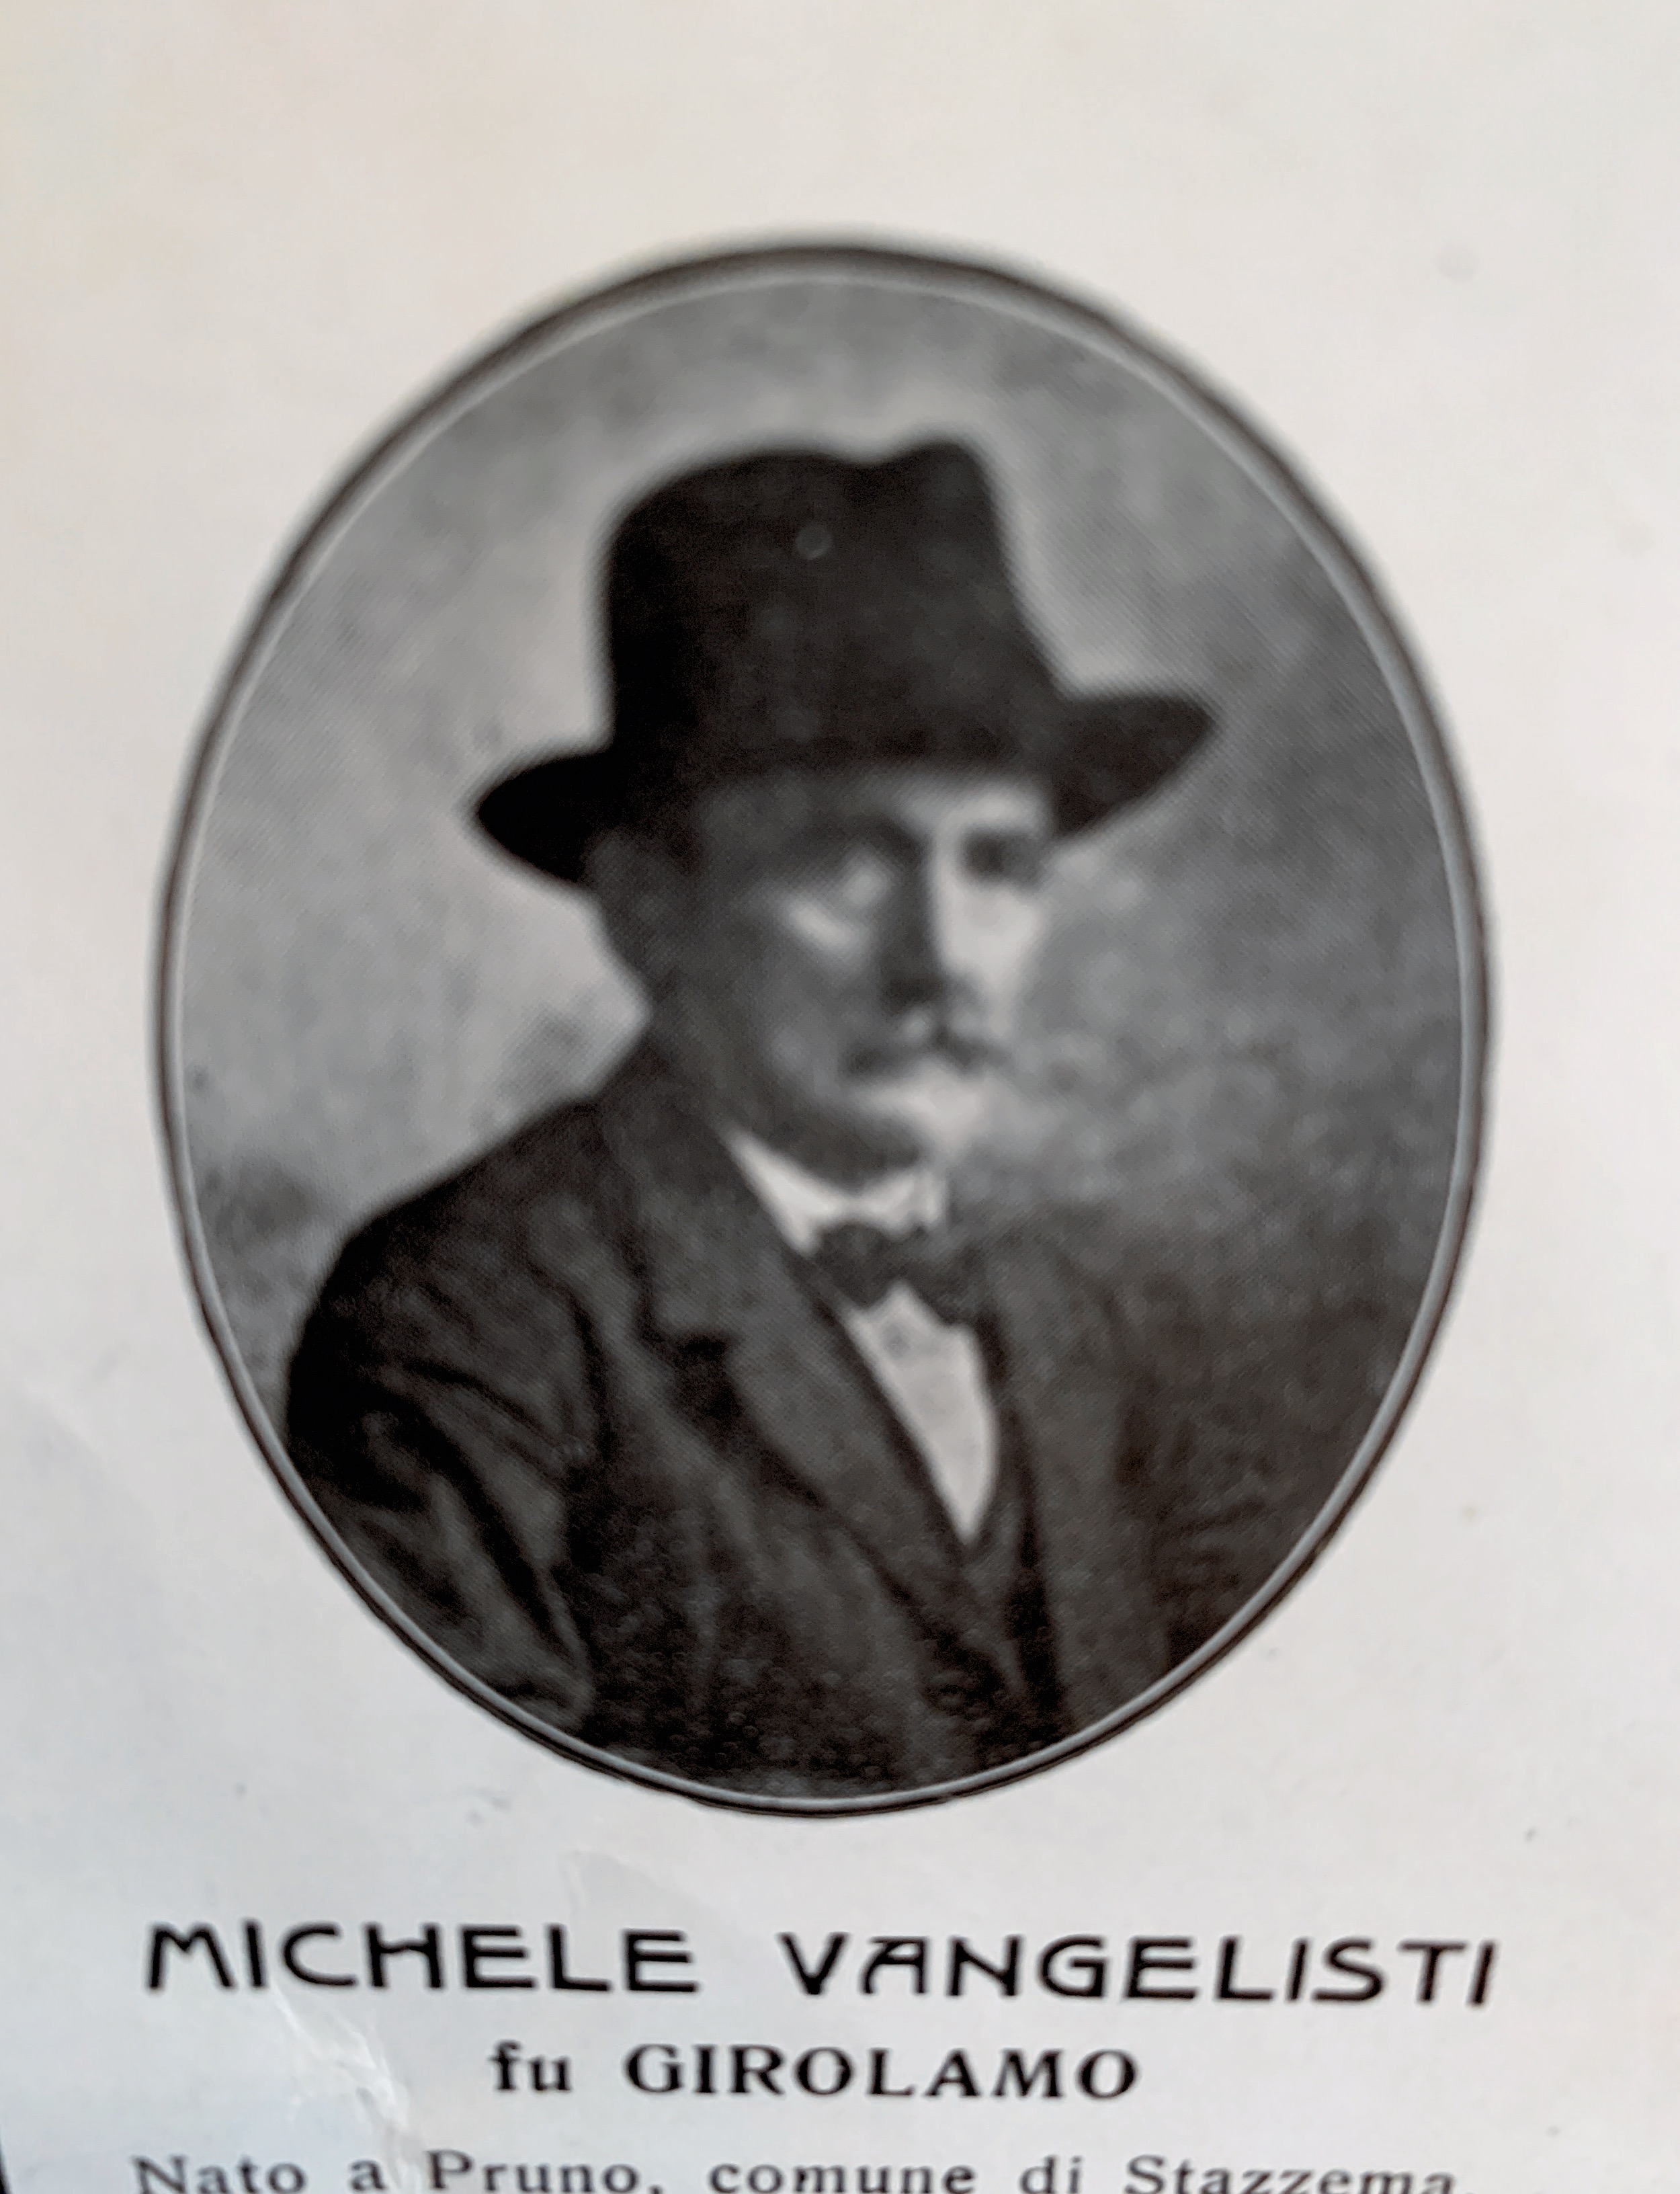 Michele Vangelisti, né le 29 septembre 1850,décédé le 19 décembre 1932.